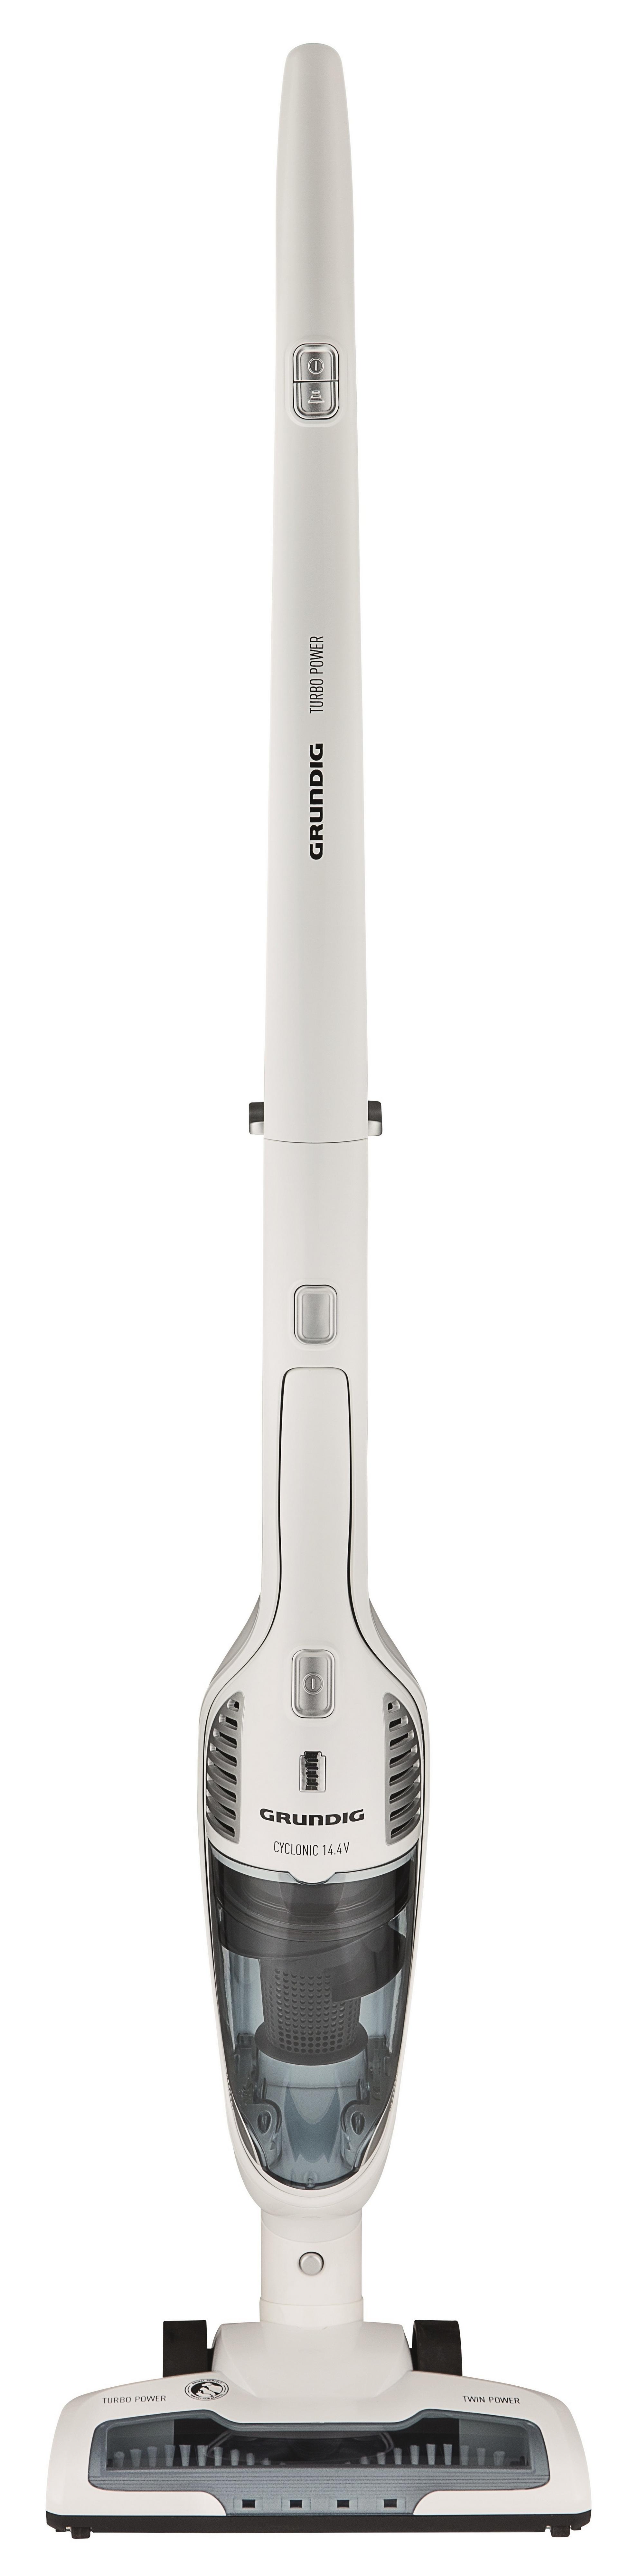 Akku-Handstaubsauger VCH 9630 - Silberfarben/Weiß, Basics, Kunststoff (16.1/63/34.5cm) - Grundig